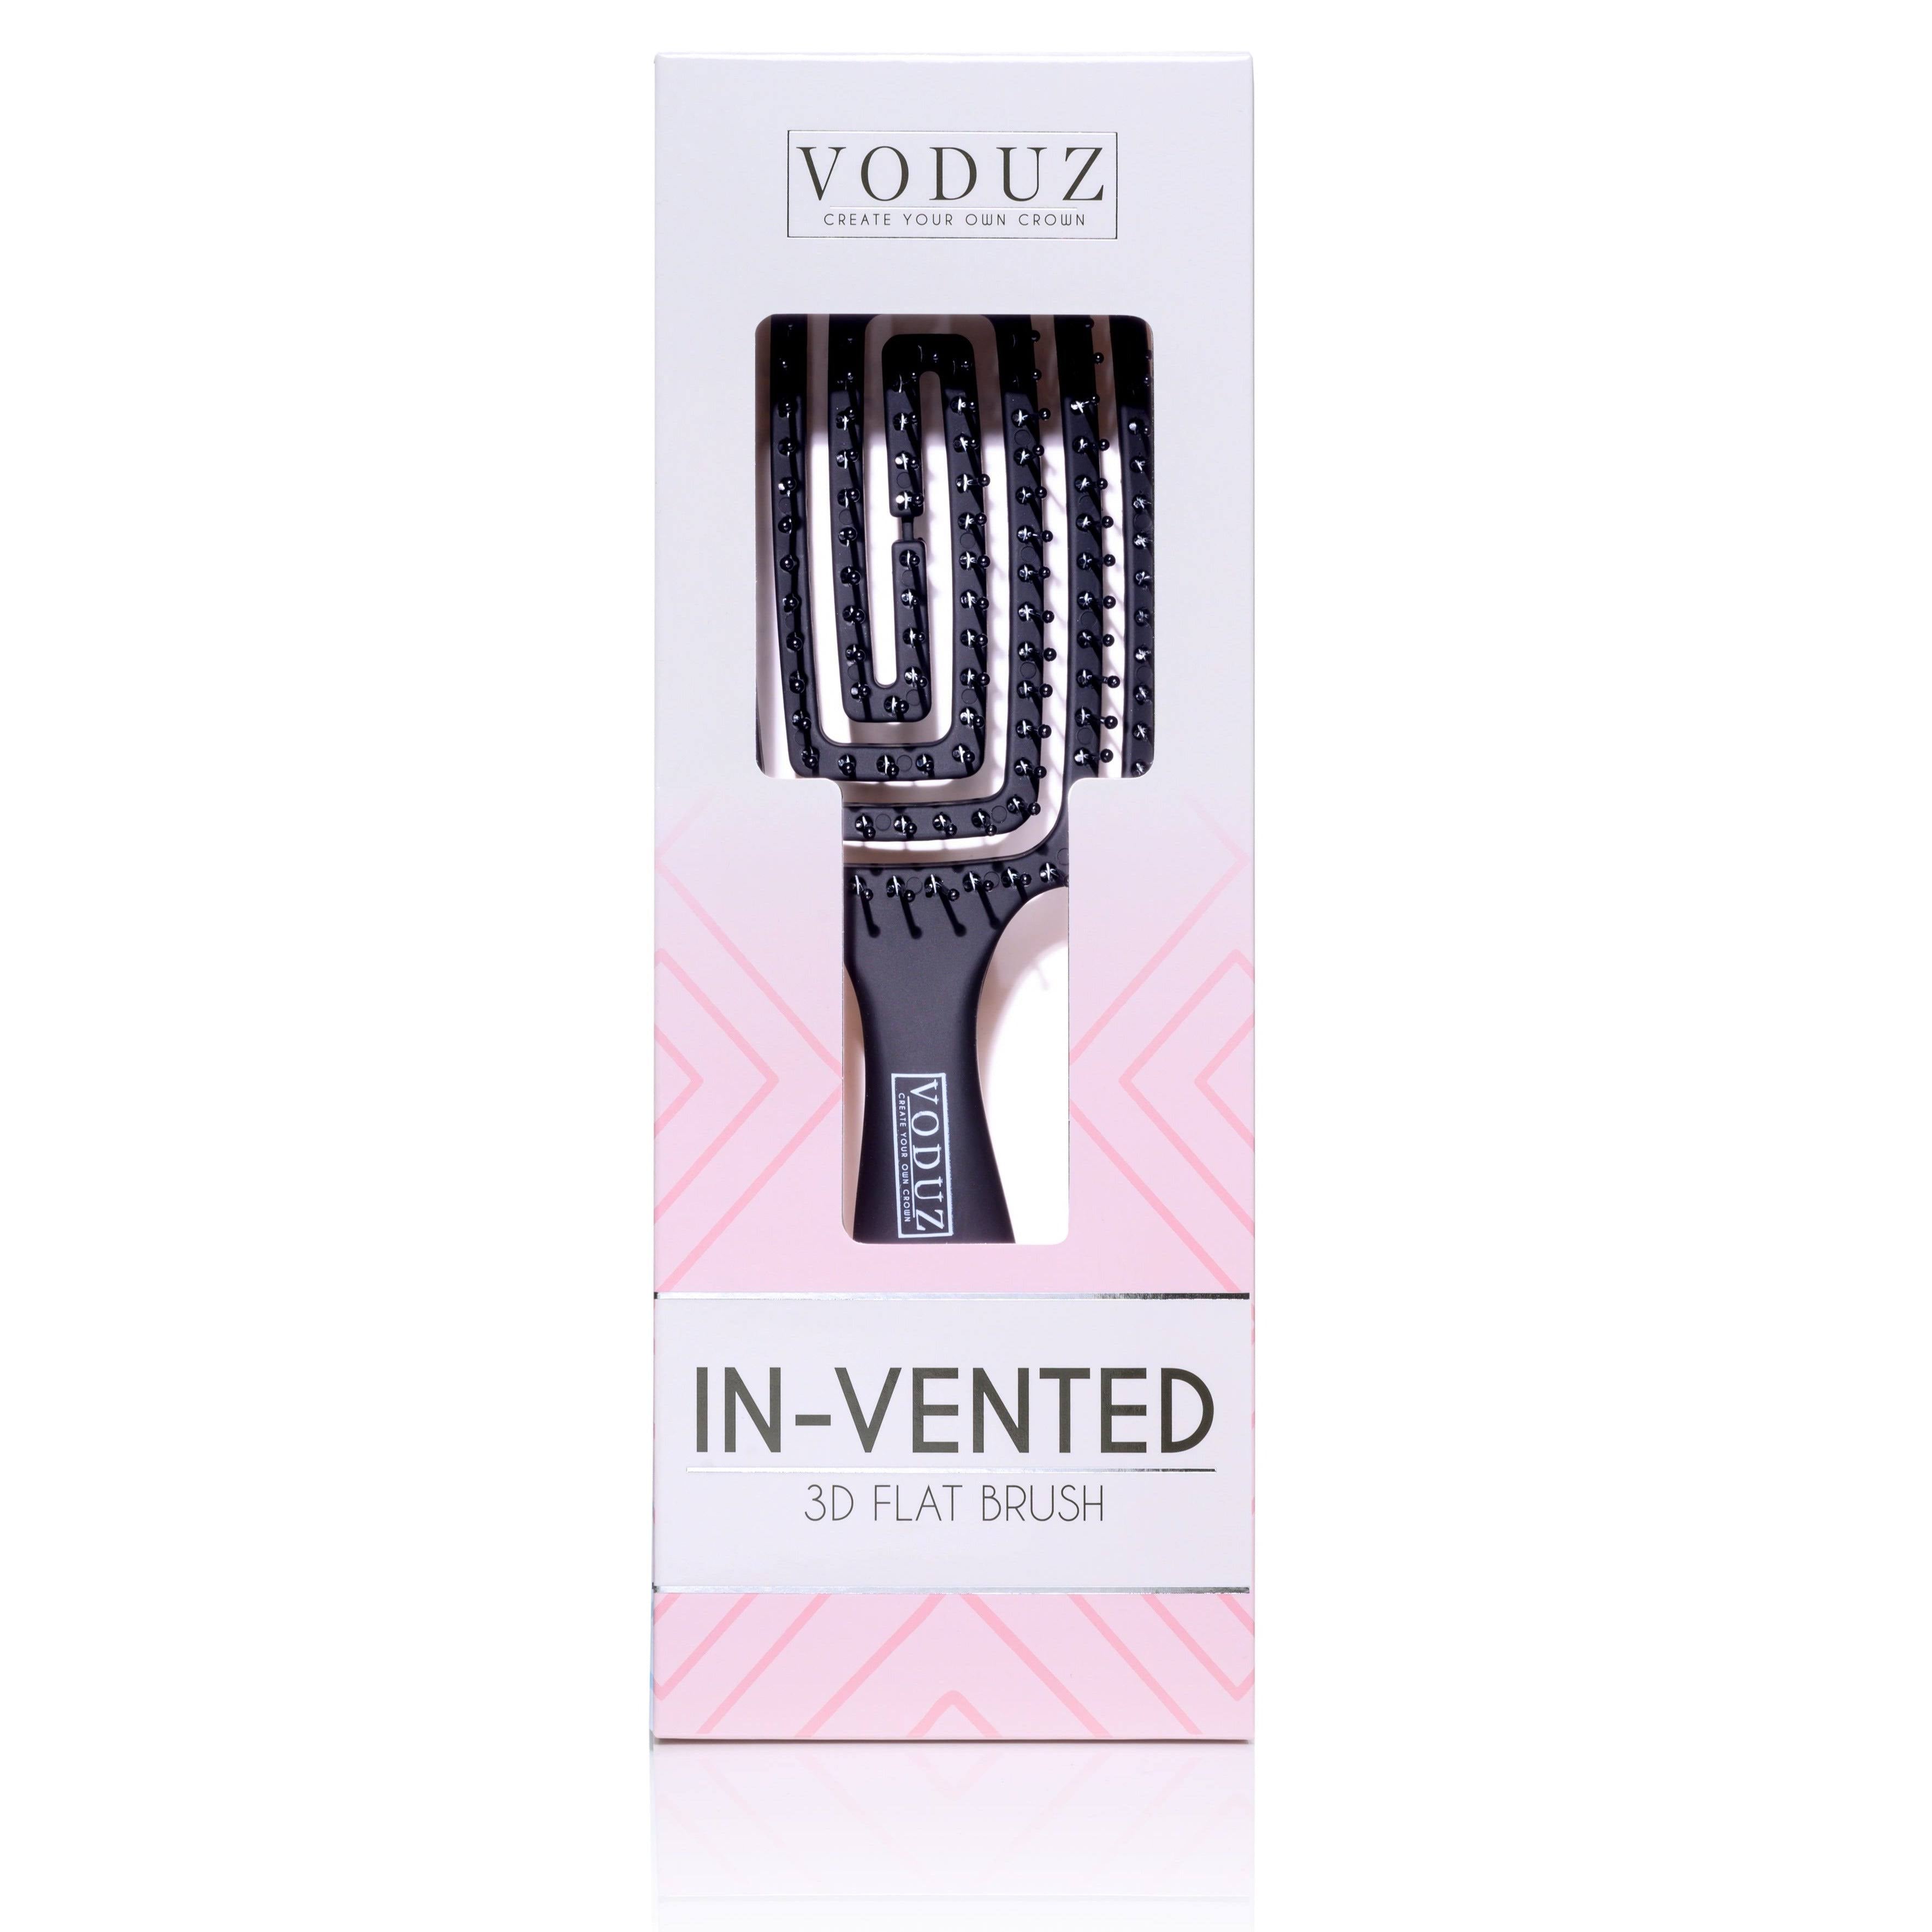 Voduz Invented 3D Vented Brush Image